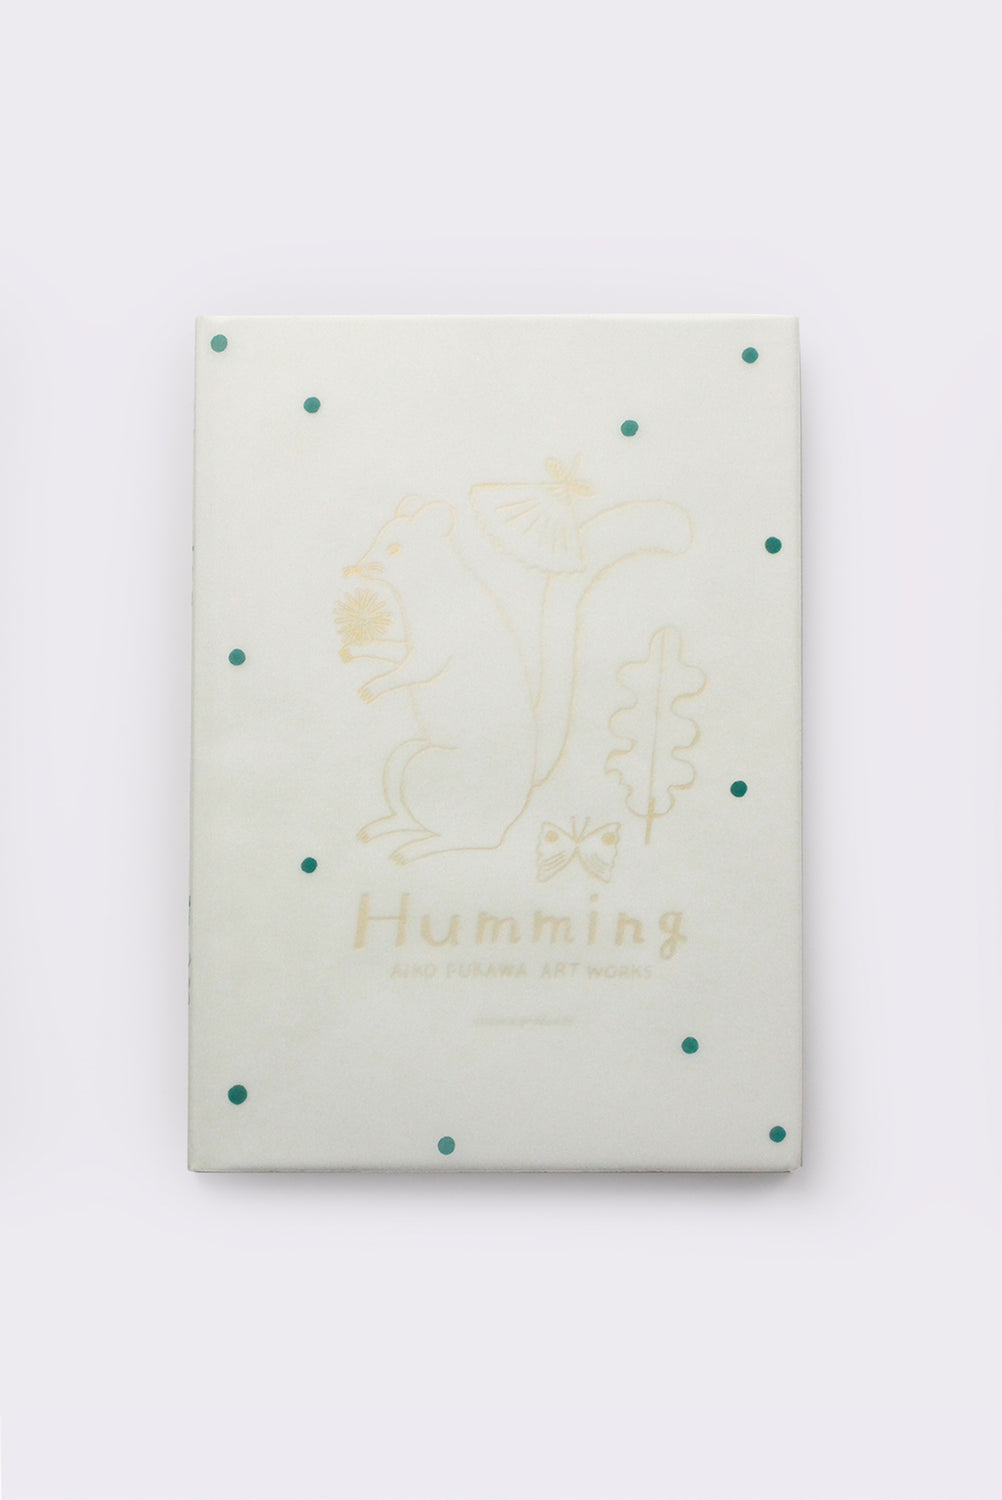 Humming by Aiko Fukawa